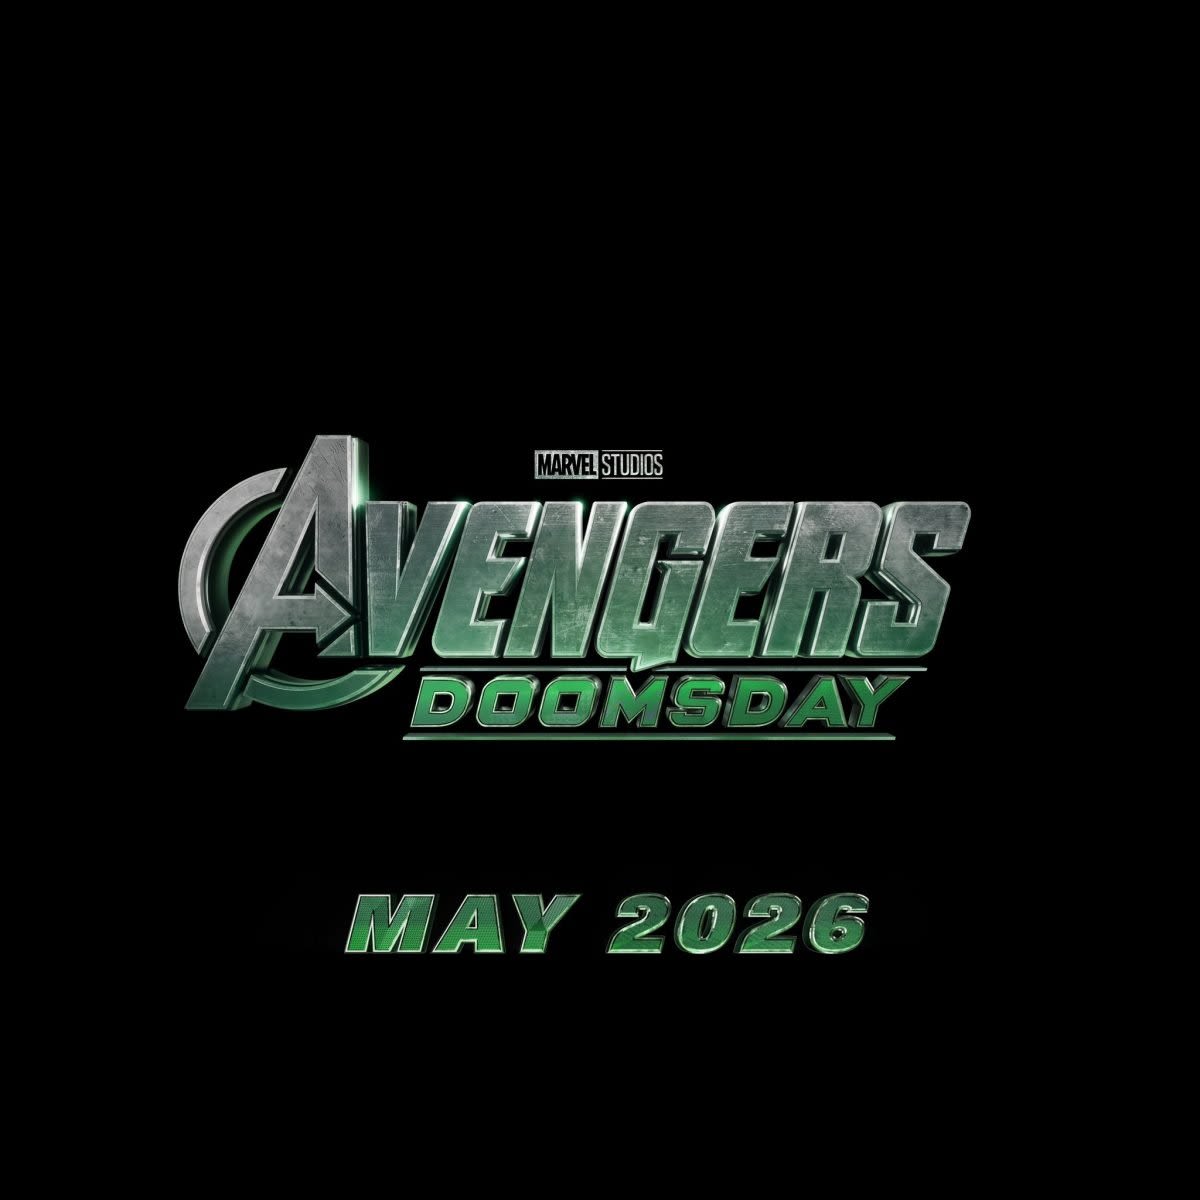 Robert Downey Jr. to Play Doctor Doom in AVENGERS: DOOMSDAY